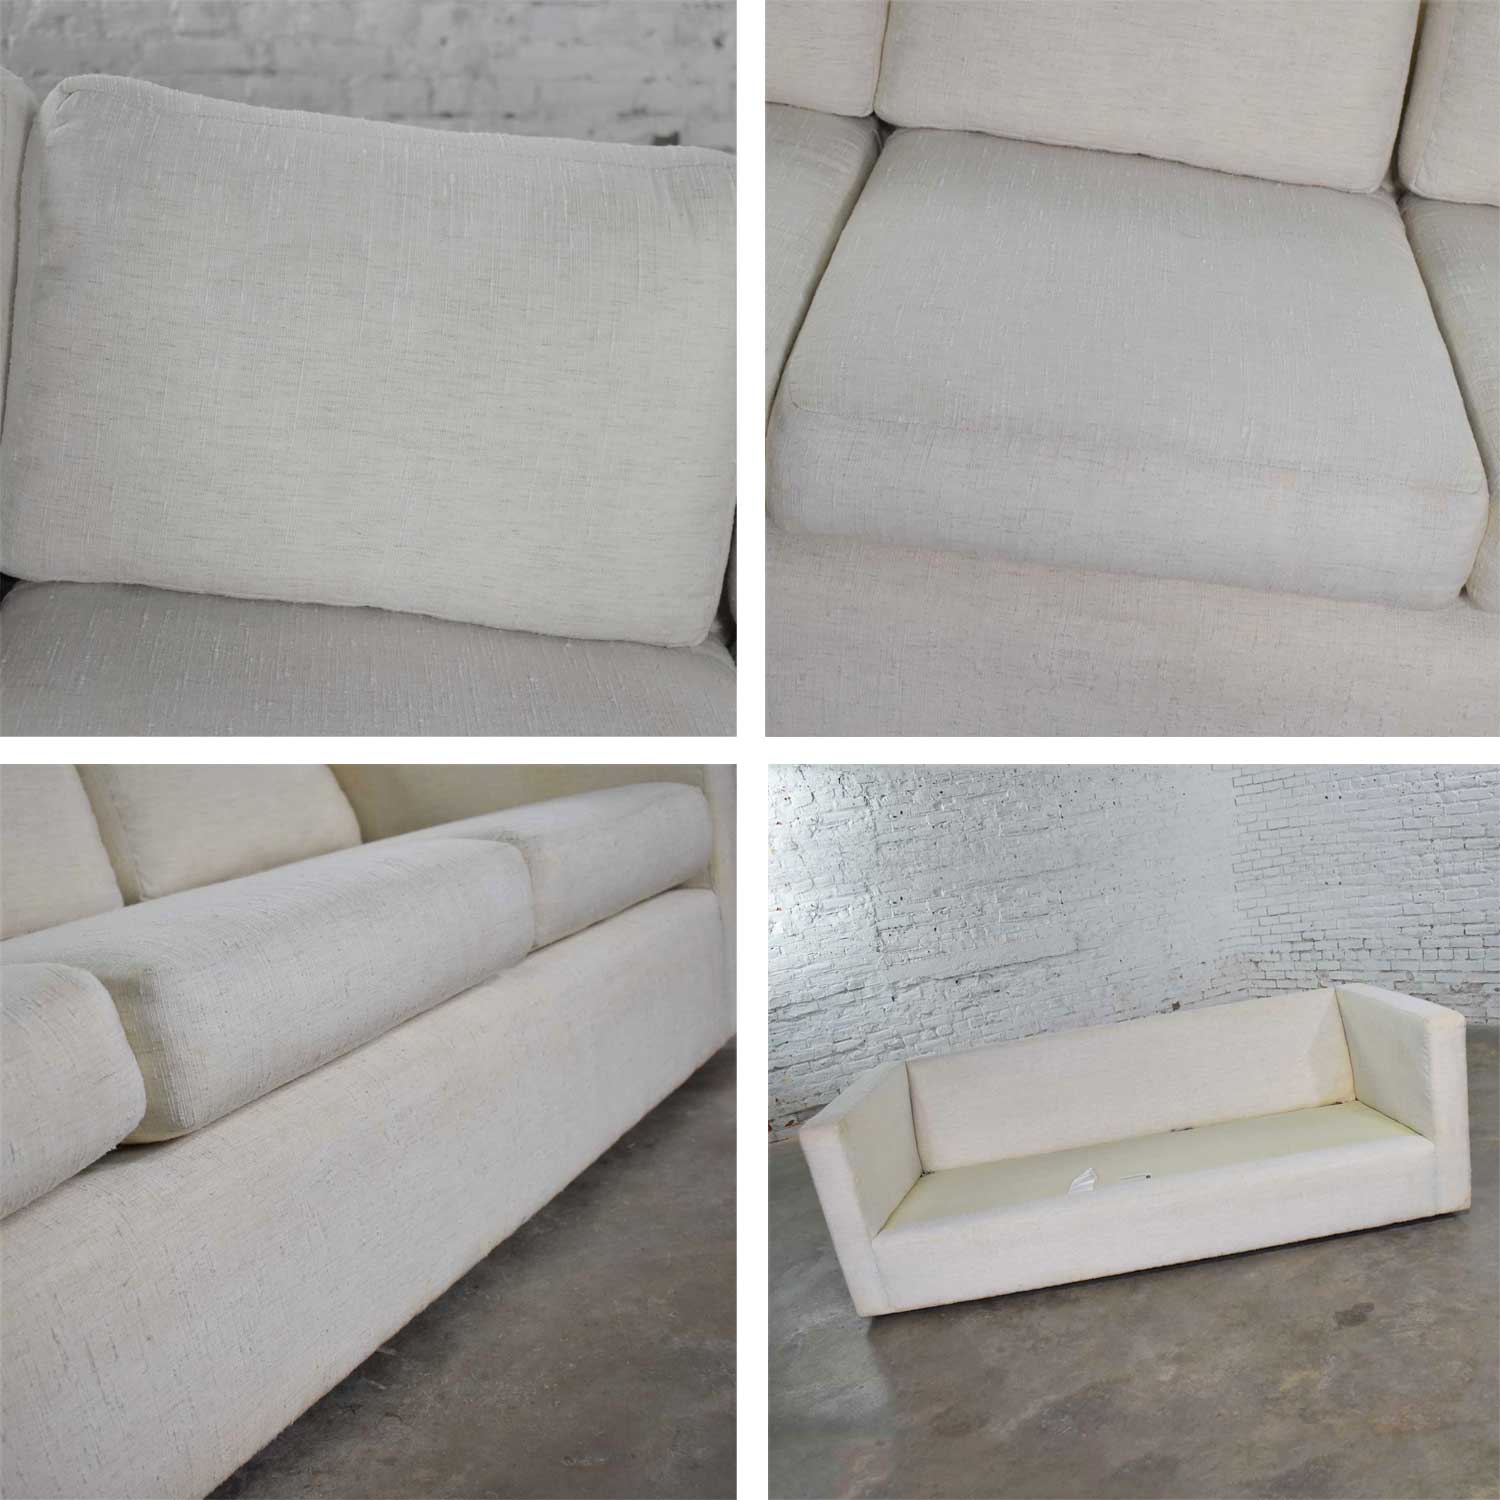 White Modern Tuxedo Style Sofa by Milo Baughman for Thayer Coggin